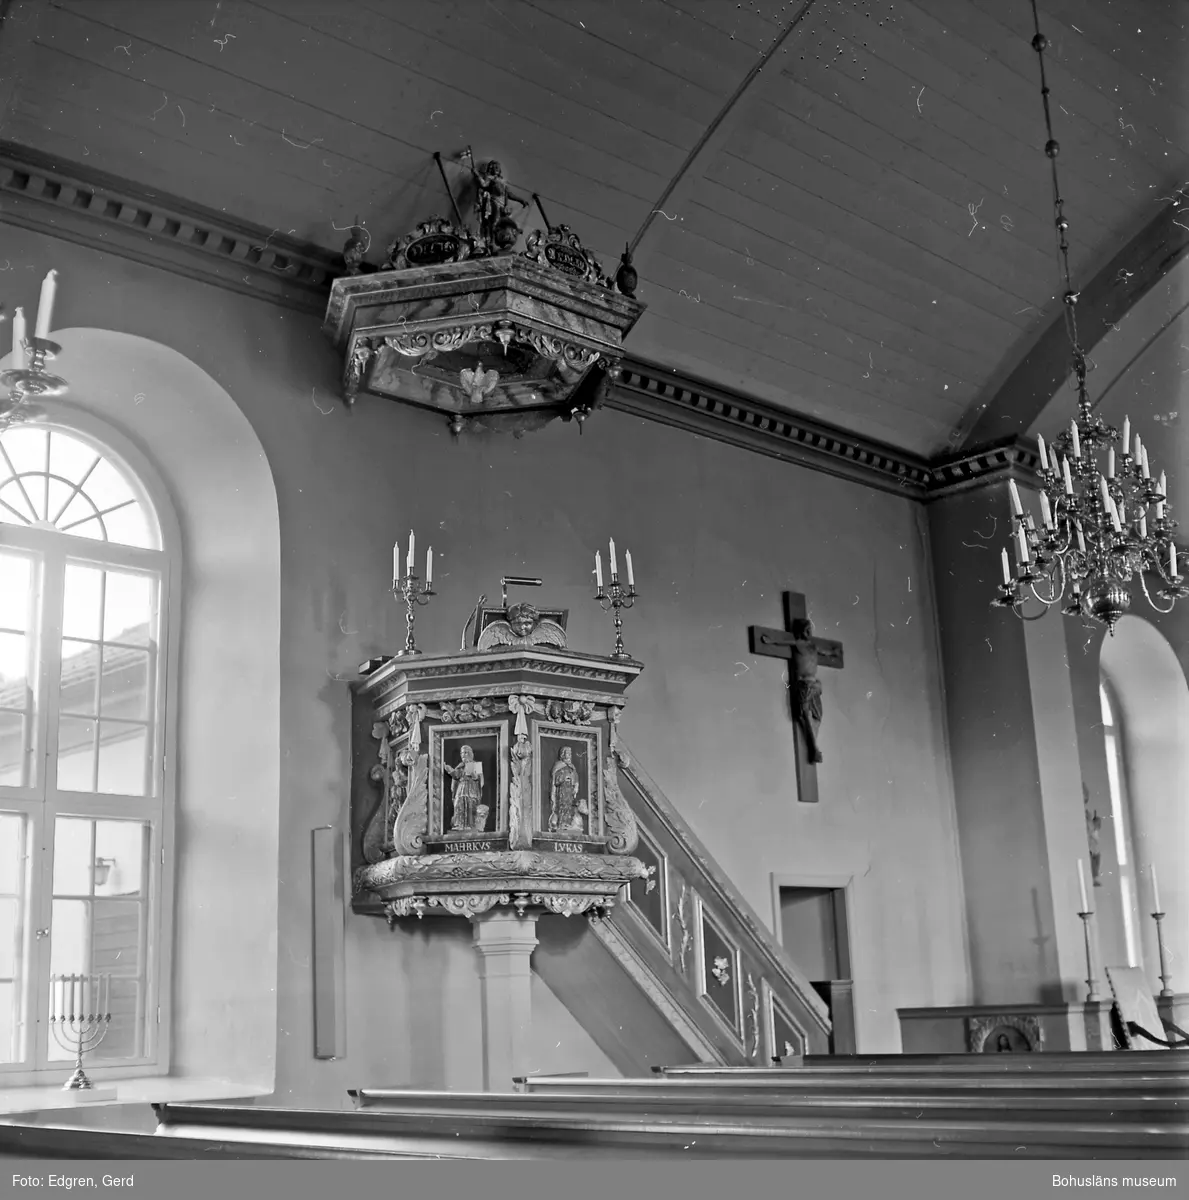 Text till bilden: "Torsby kyrka. Predikstol med ljudtak från den gamla kyrkan. Snickerarbete av Nils Läns, Göteborg 1692".